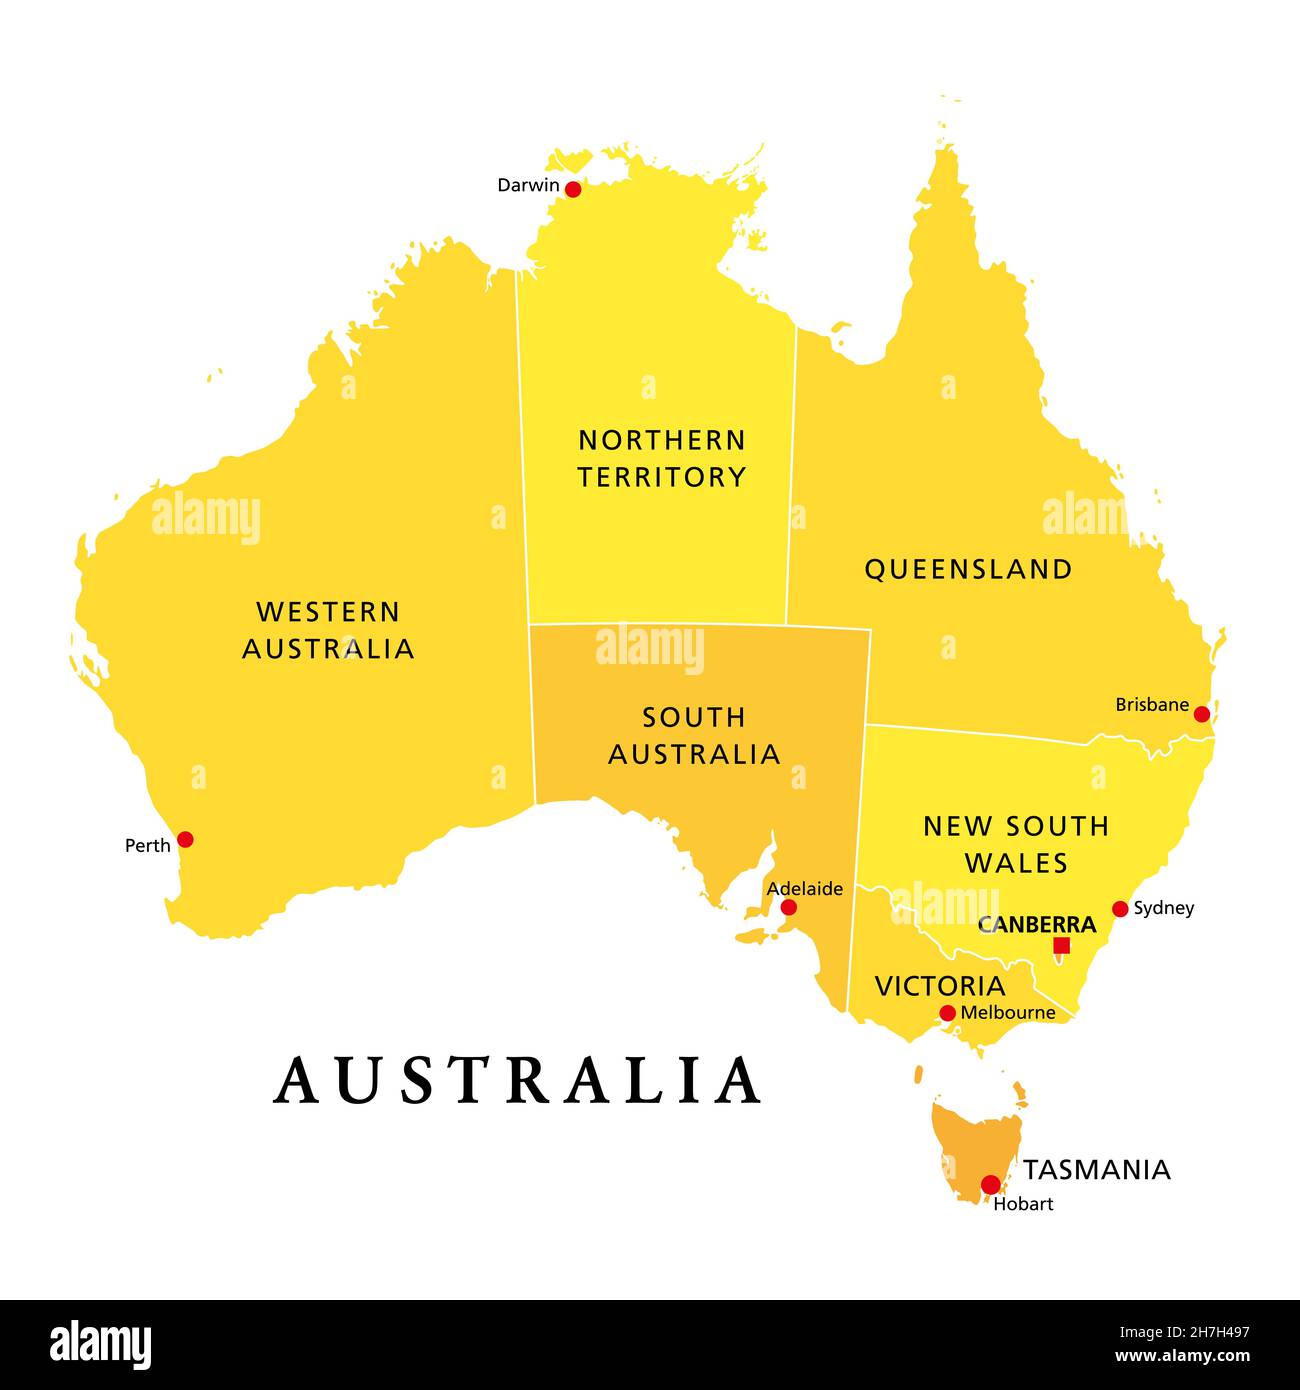 Australia, mapa político, con la capital Canberra, estados administrativos y territorios. El Commonwealth de Australia, un país y un continente. Foto de stock